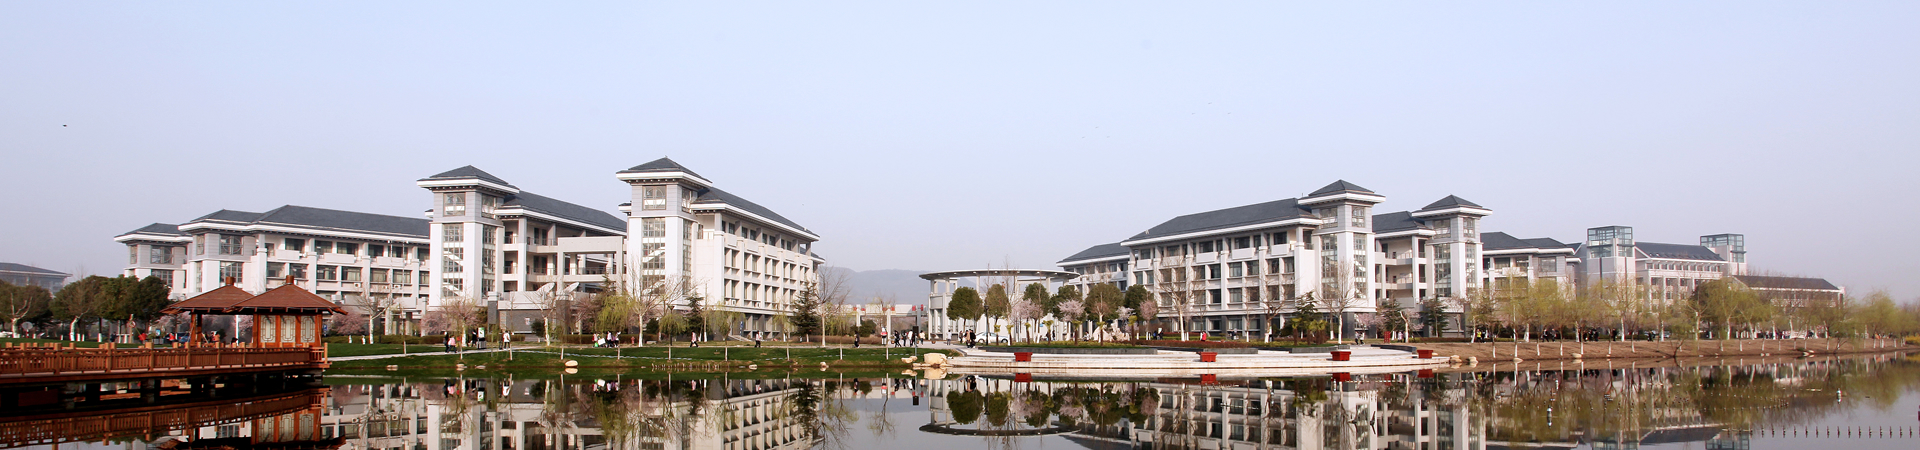 Nanjing Xiaozhuang University